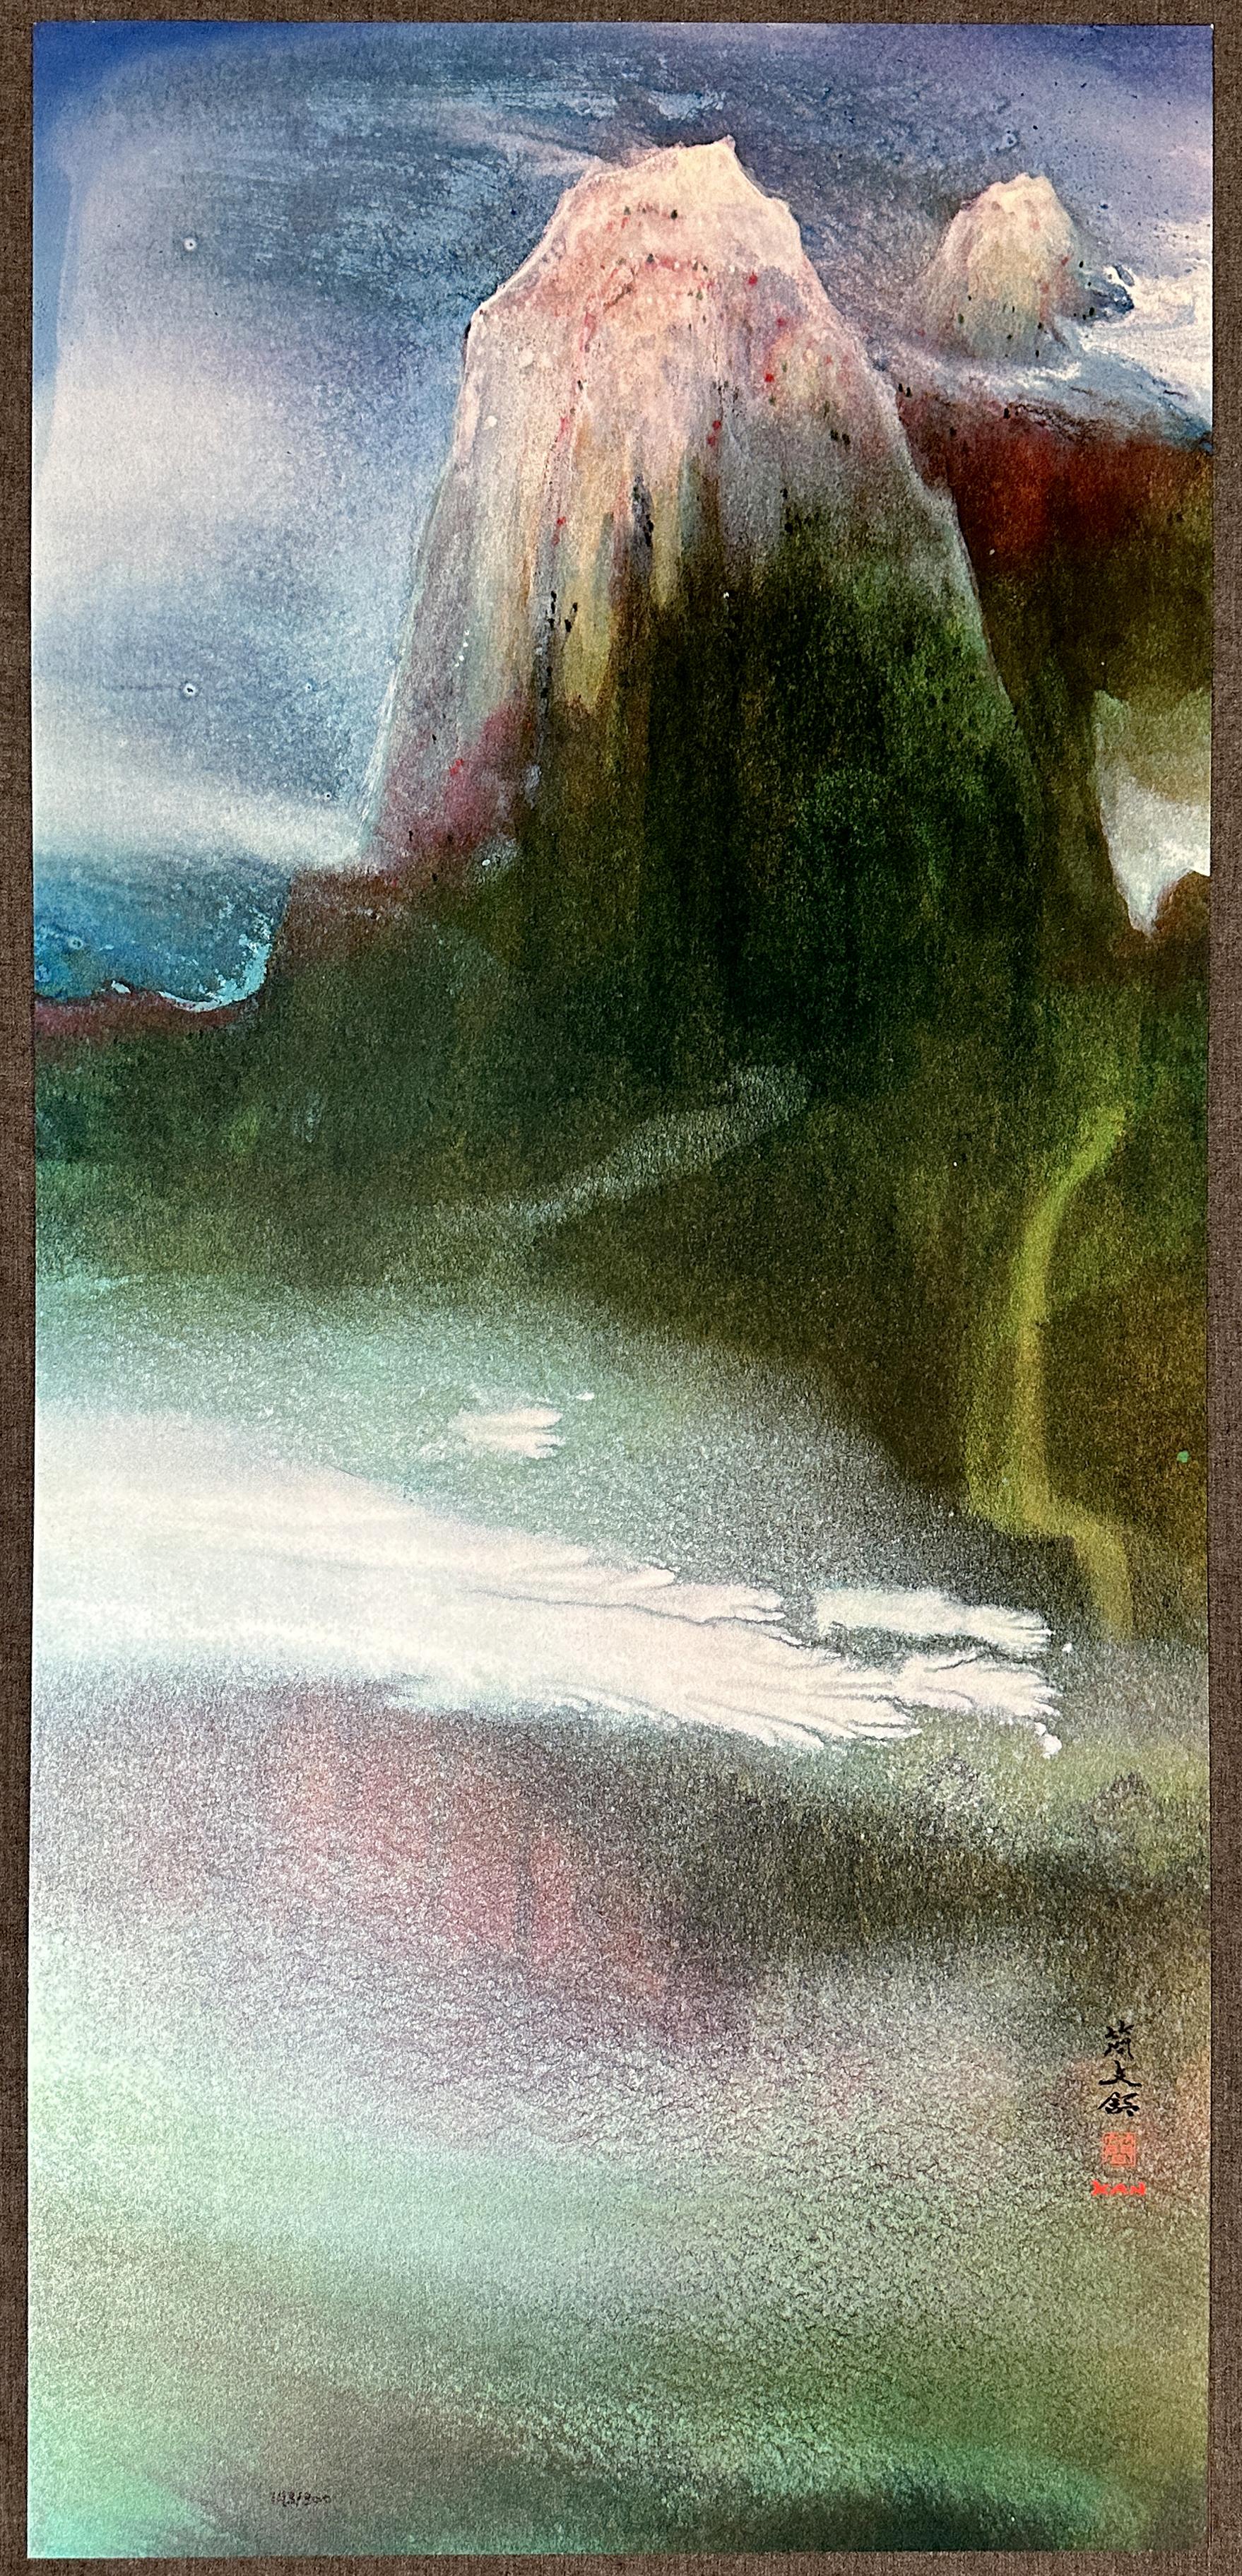 Paysage fantastique 1990, édition limitée  - Print de Diana Kan